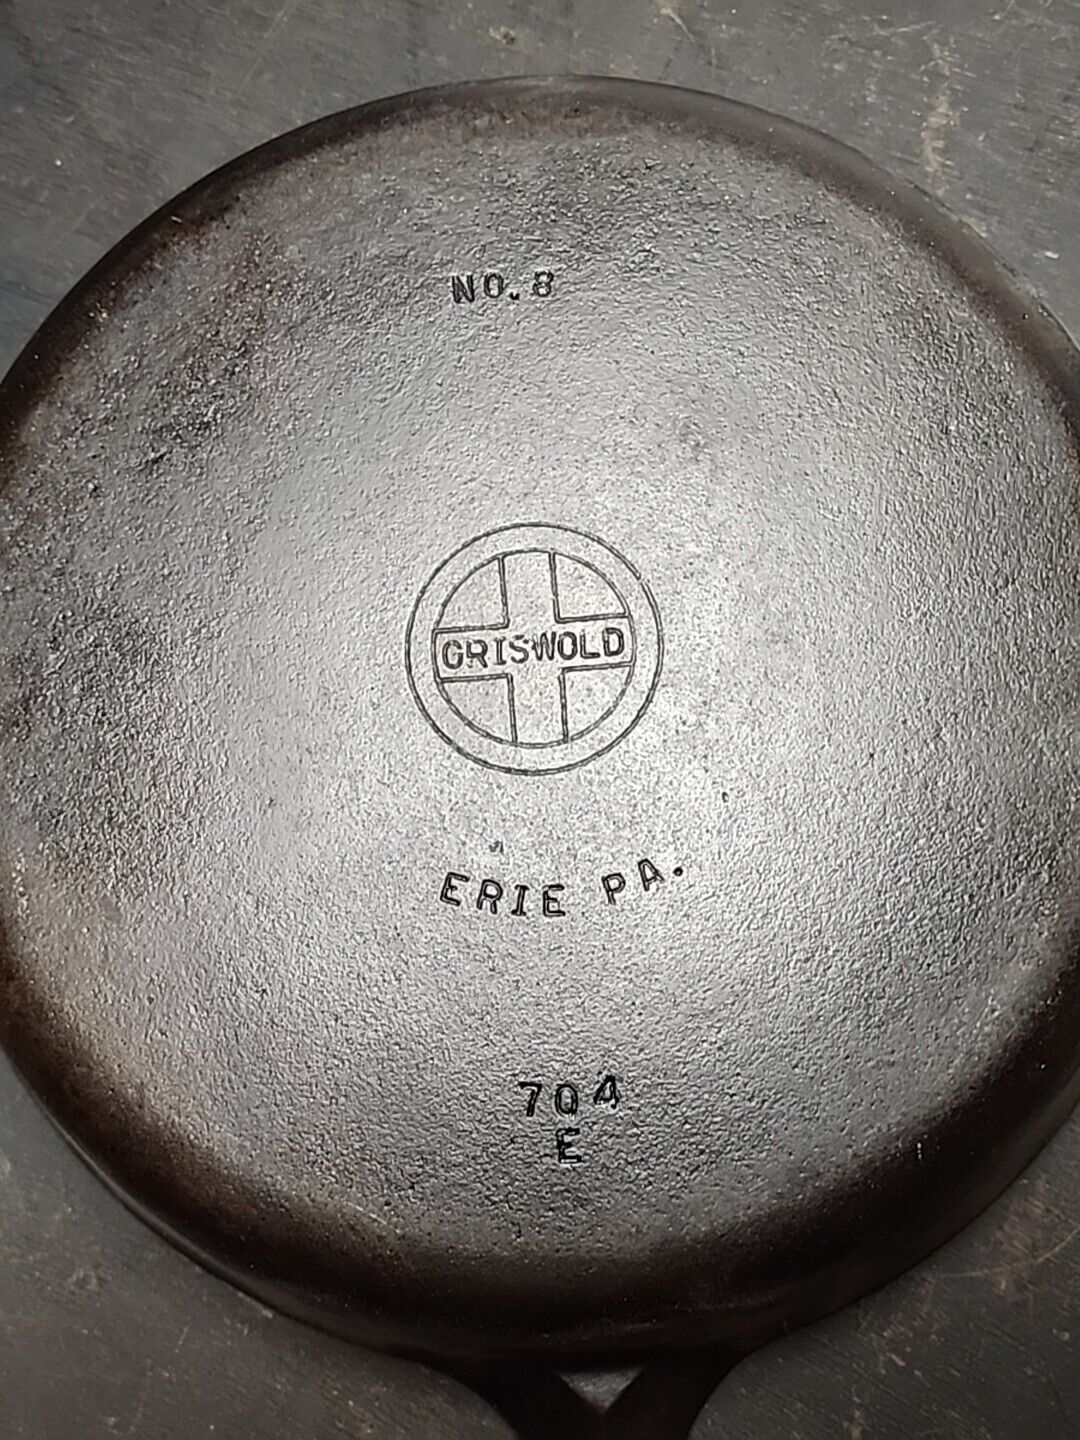 Vintage Griswold Cast Iron Skillet #8 Used 1939 - 1957 Part Number 704E